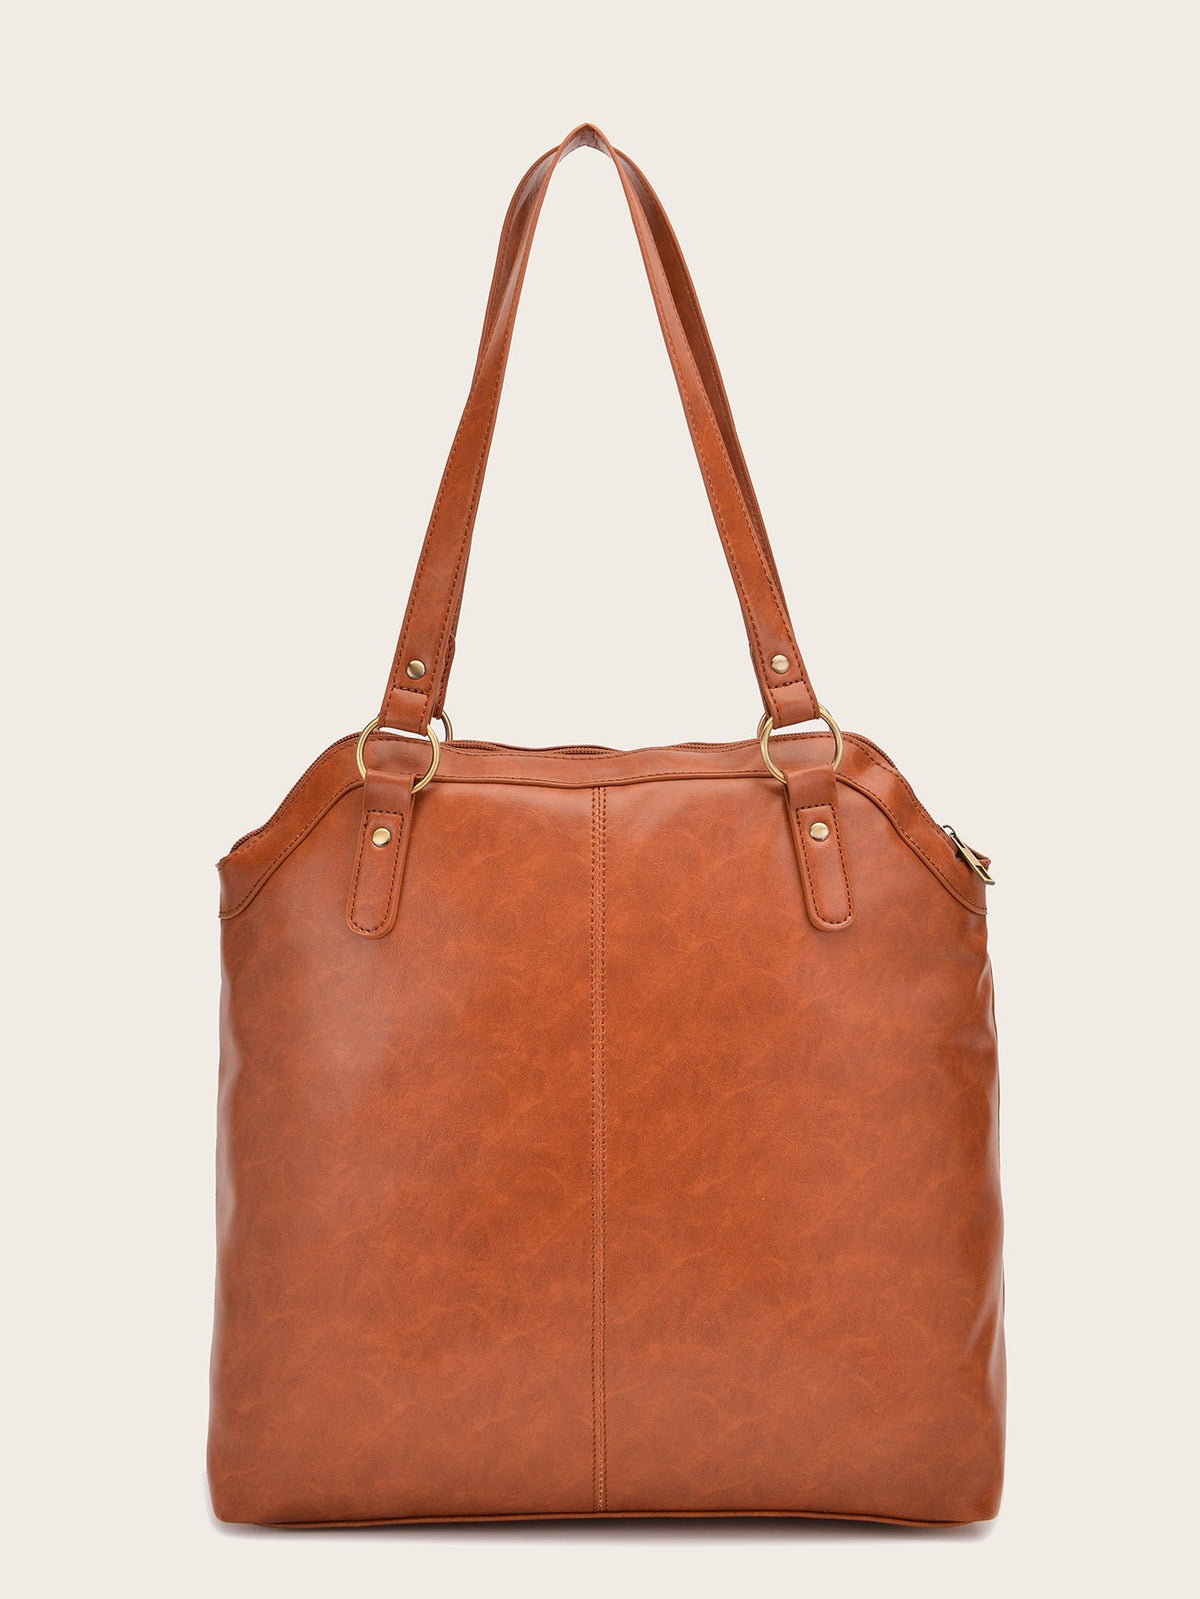 Women Large Capacity Bag Handle bag Sai Feel